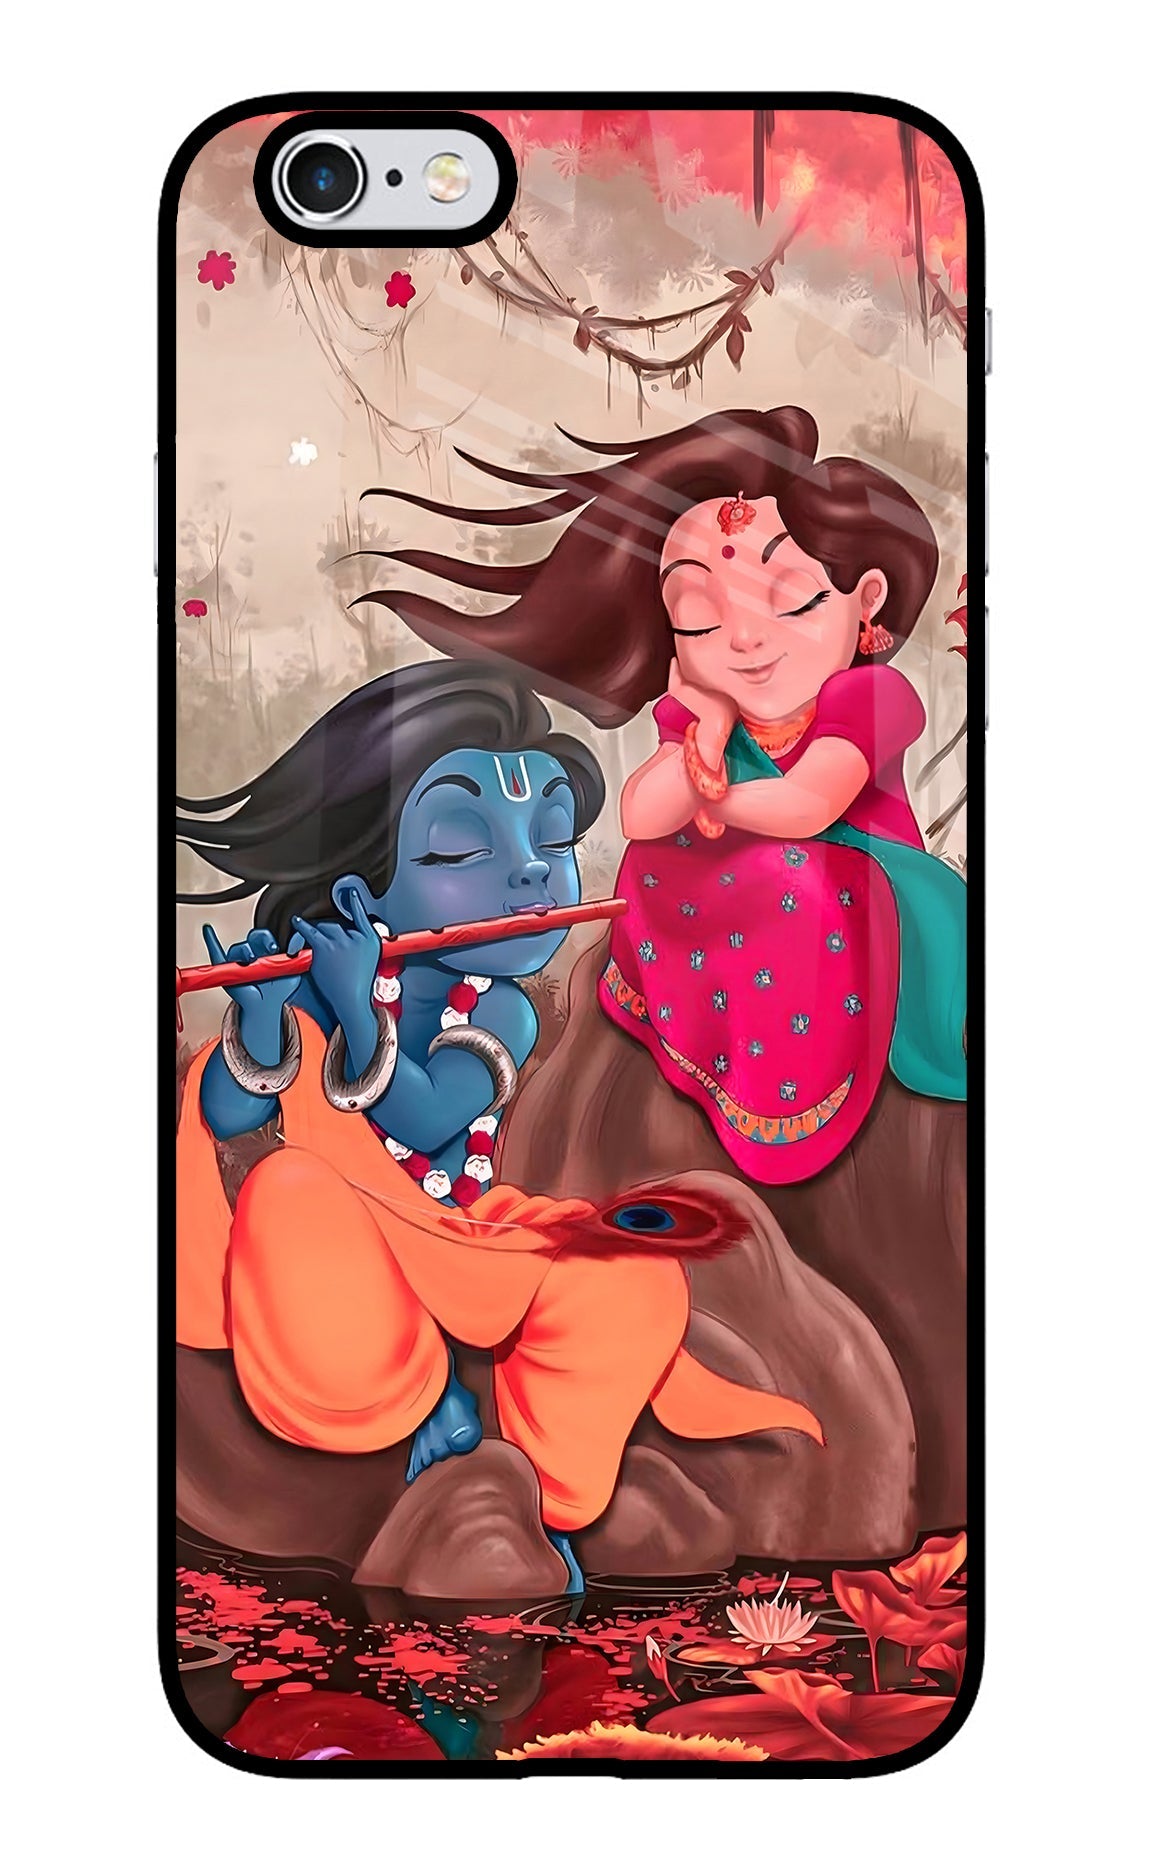 Radhe Krishna iPhone 6 Plus/6s Plus Glass Case